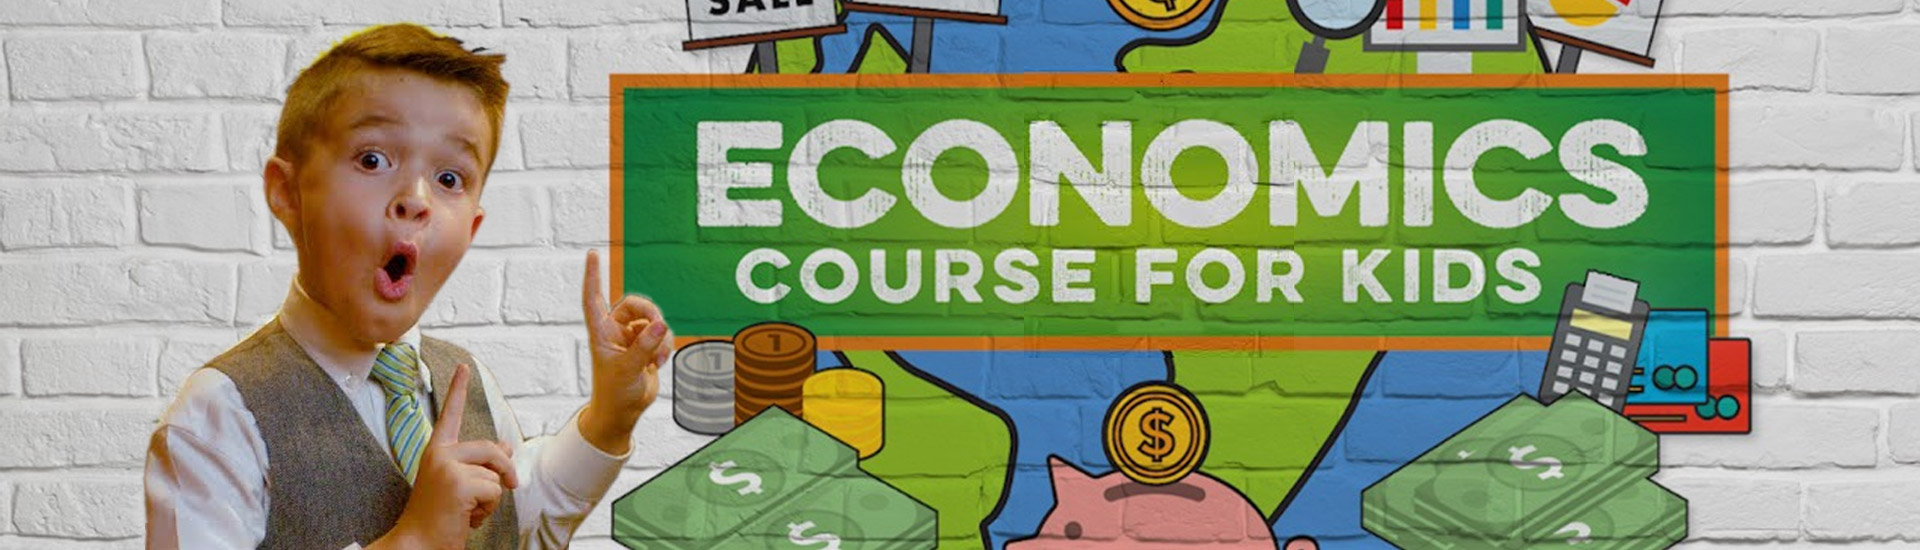 Economics Course for Kids